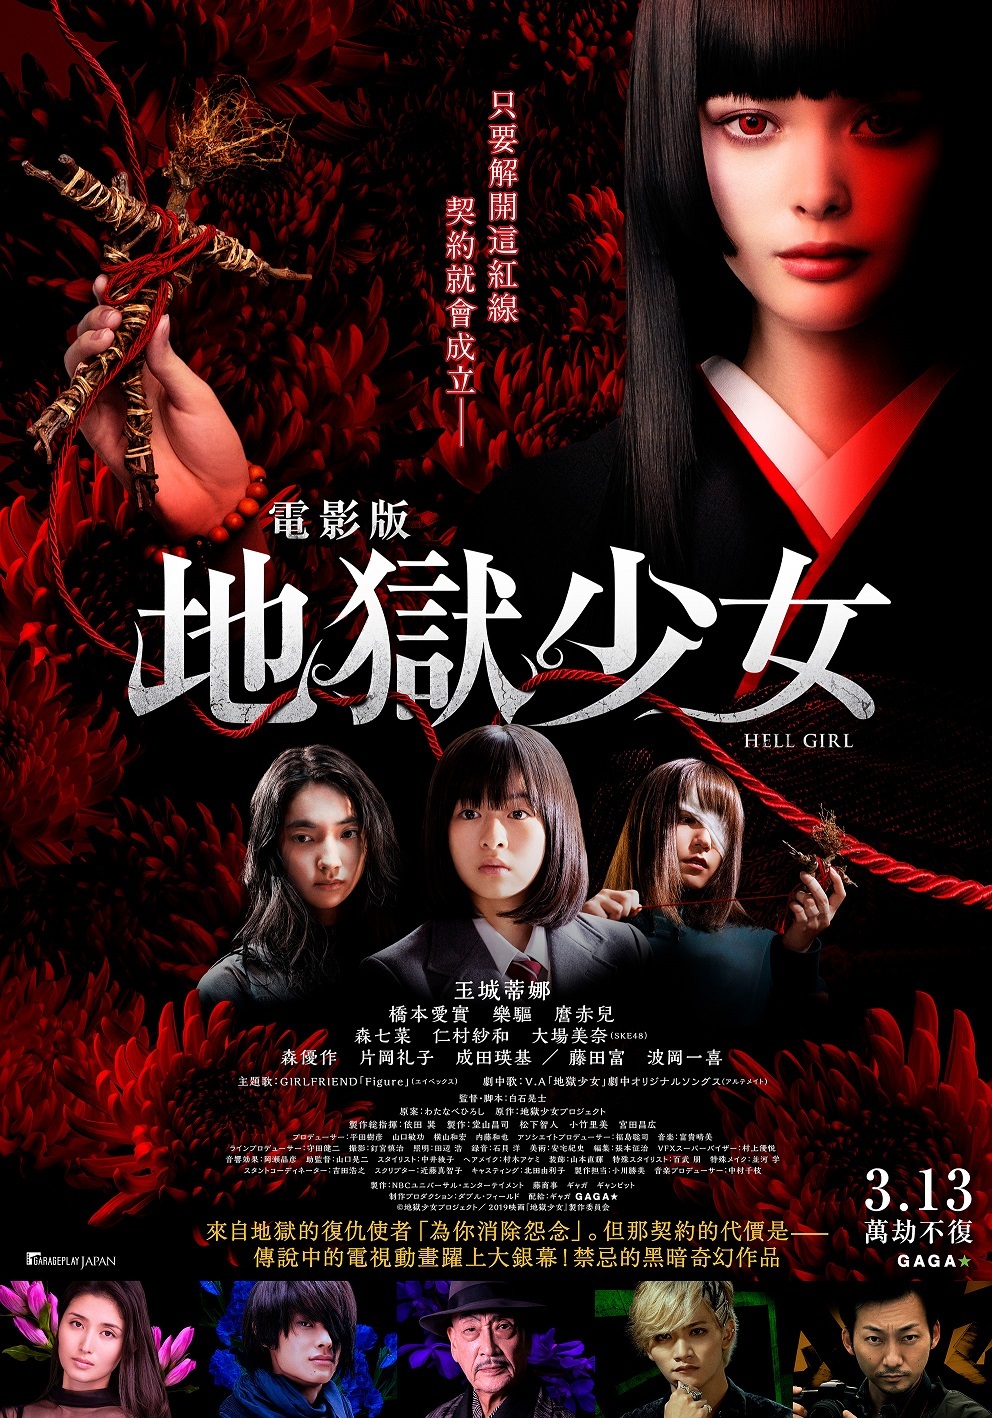 地獄少女 真人版電影宣布將於3 月13 日在台上映 小説地獄少女 巴哈姆特